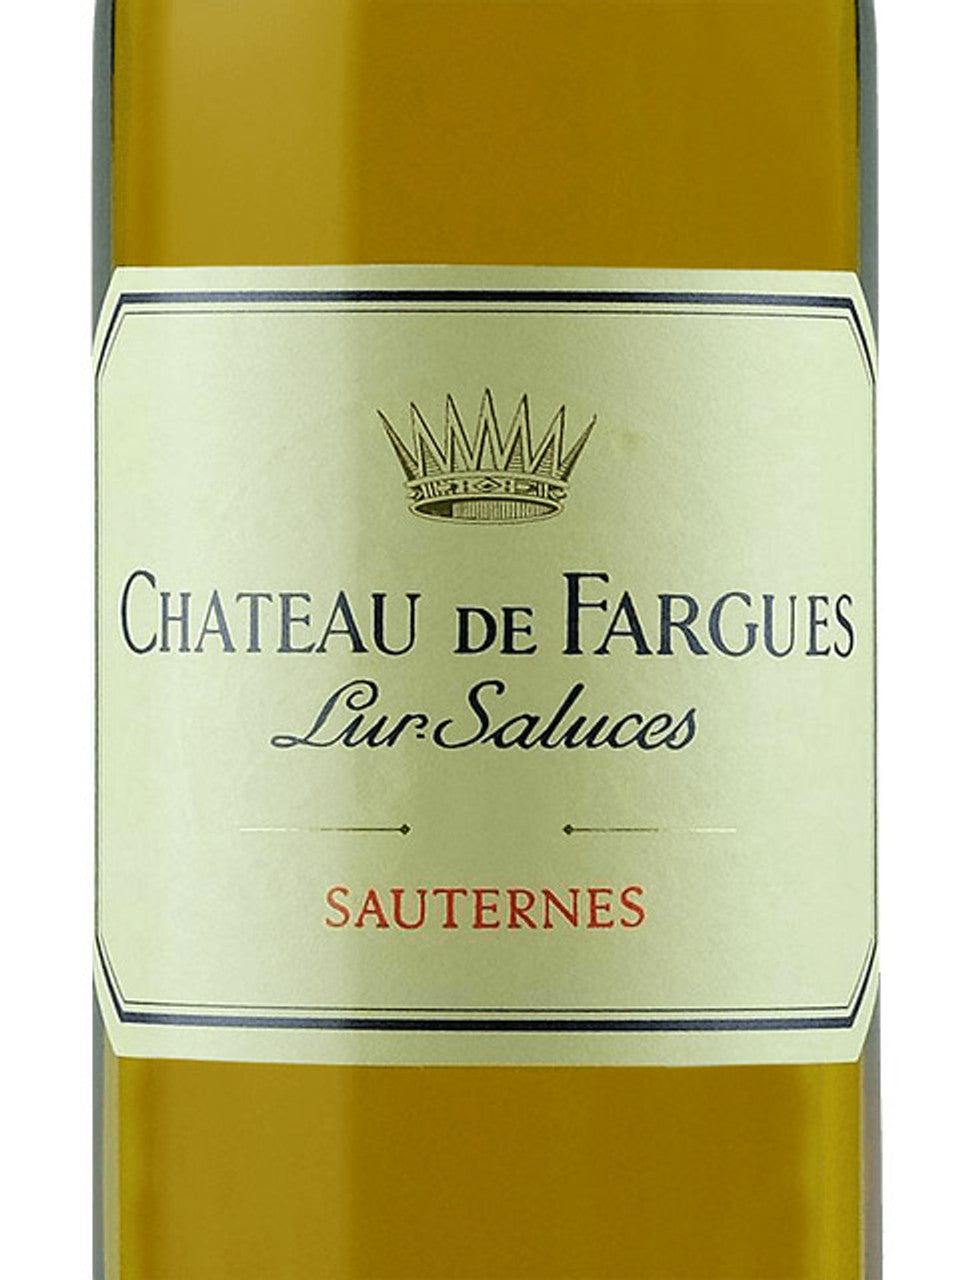 2007 Ch. de Fargues Sauternes; 375ml